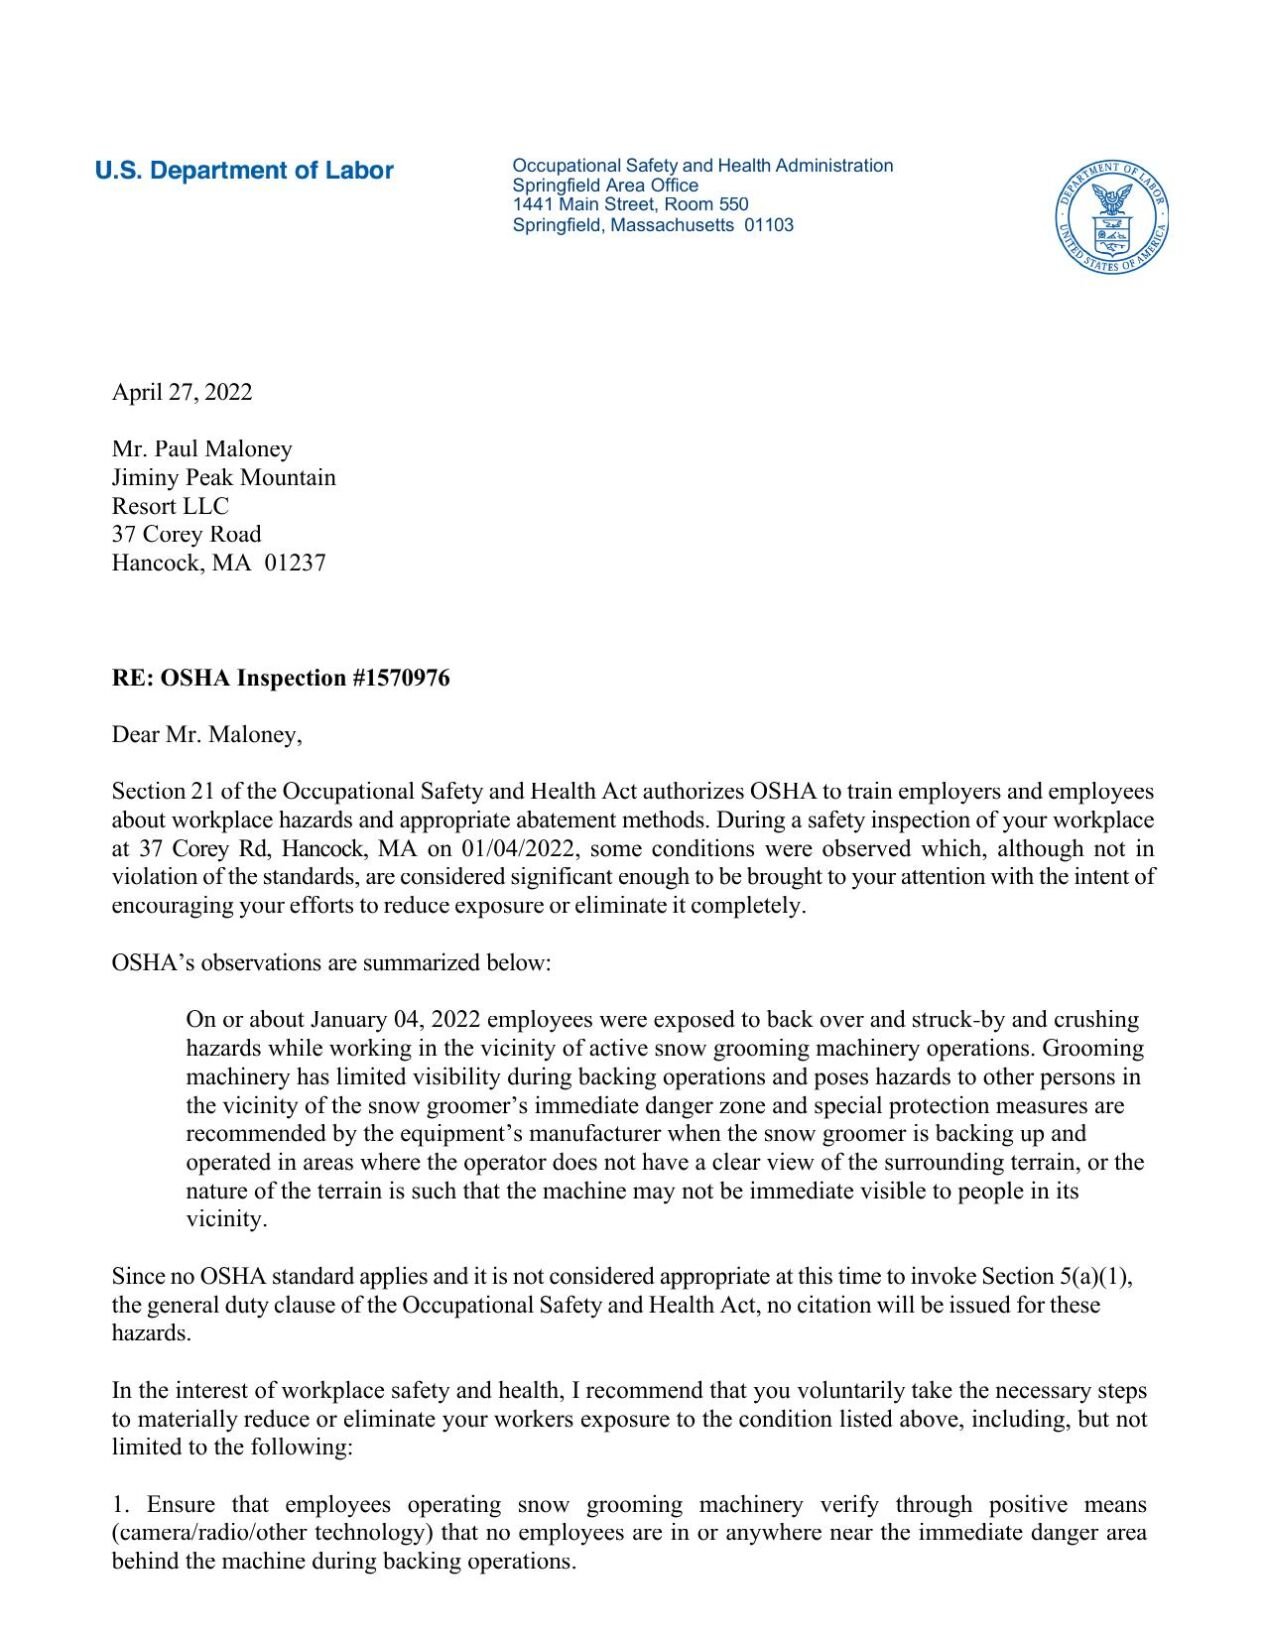 OSHA letter to Jiminy Peak Resort